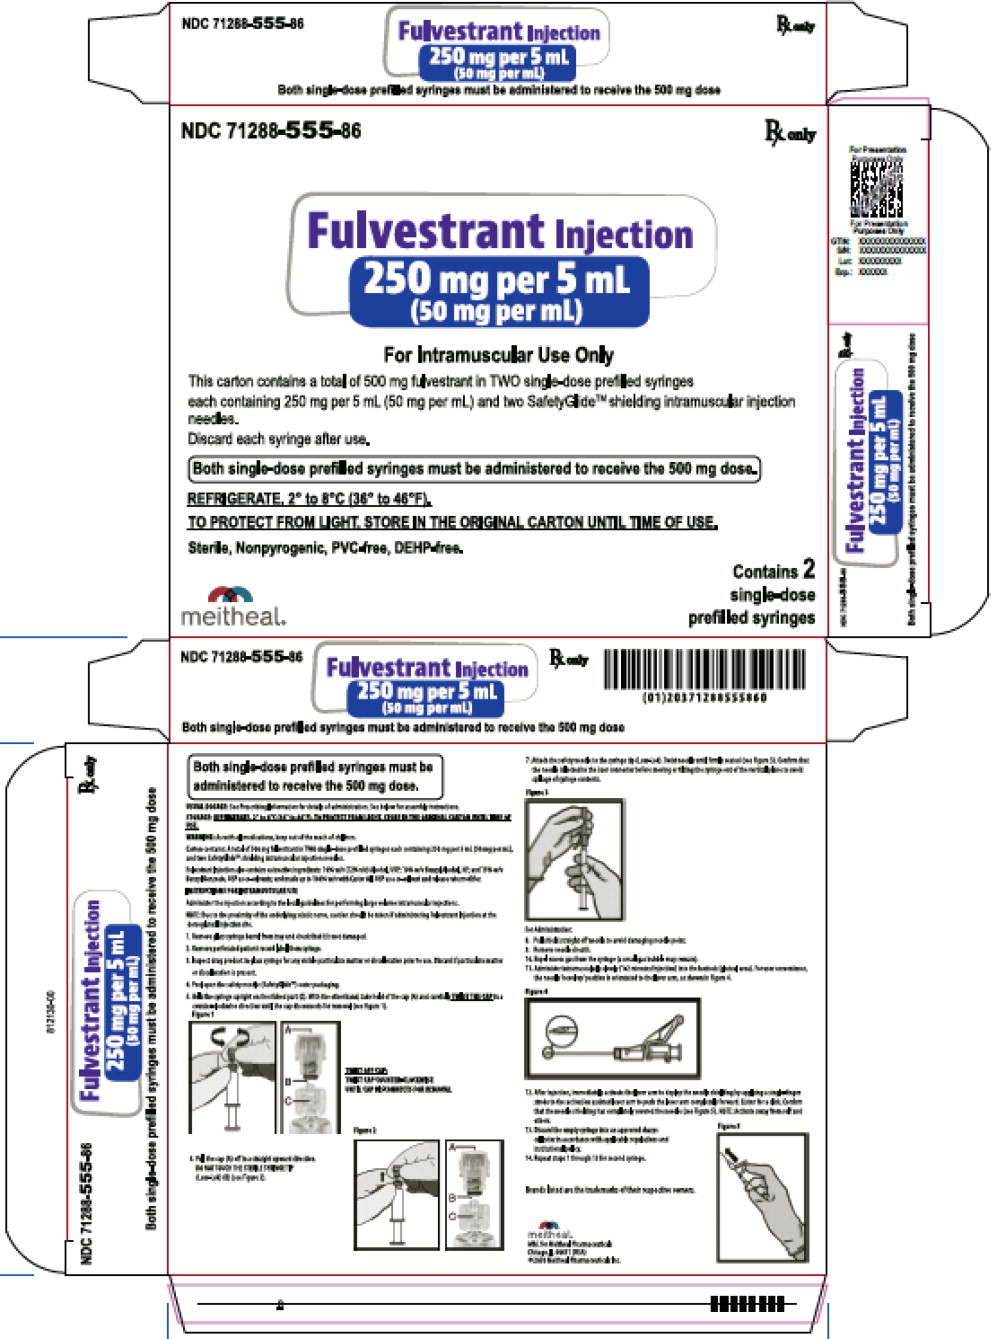 Principal Display Panel – Fulvestrant Injection, 250 mg per 5 mL (50mg per ml) Carton
